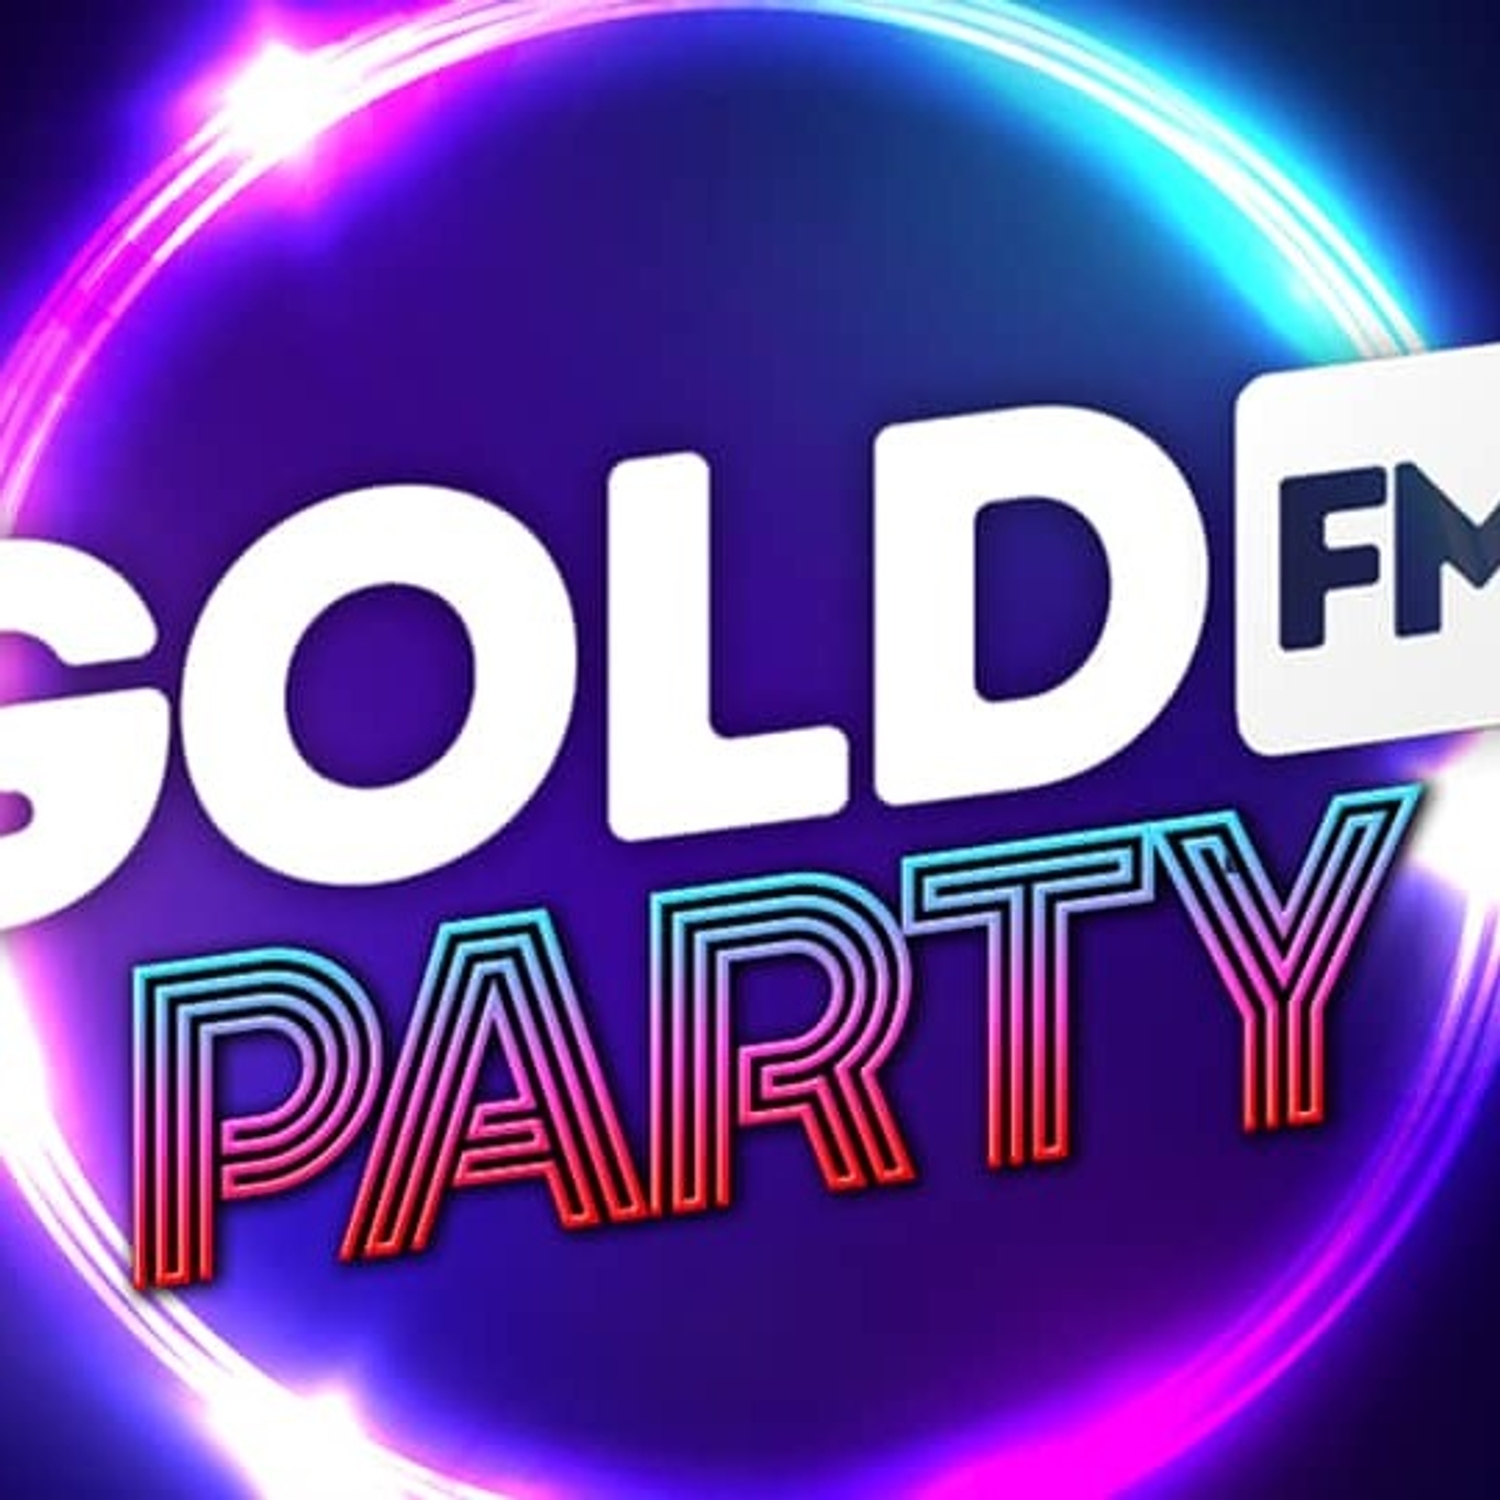 Gold FM Party